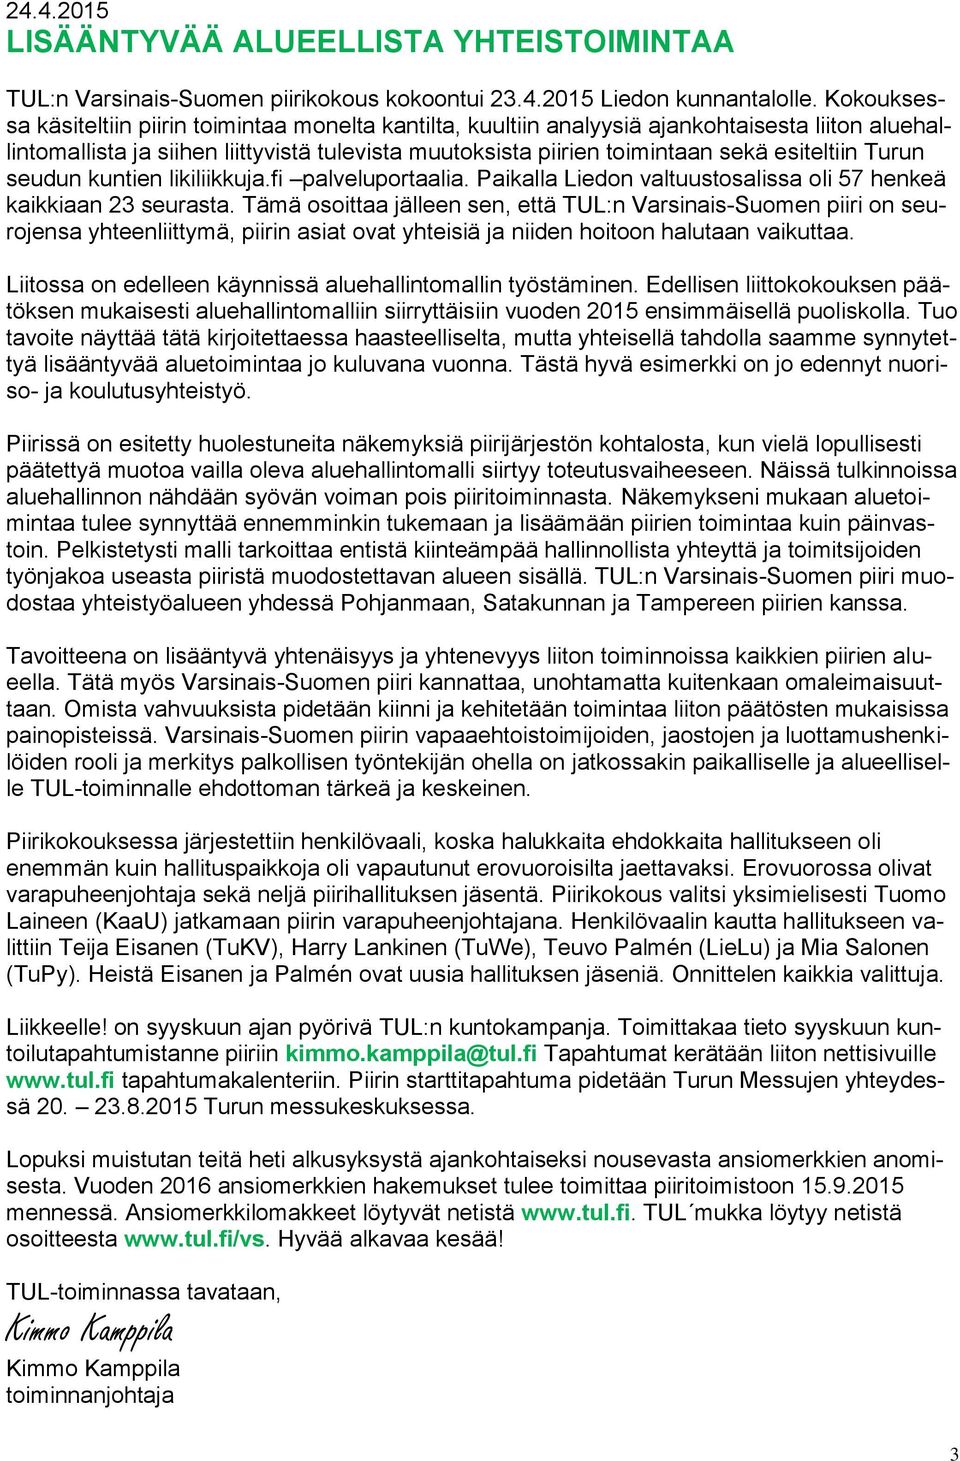 esiteltiin Turun seudun kuntien likiliikkuja.fi palveluportaalia. Paikalla Liedon valtuustosalissa oli 57 henkeä kaikkiaan 23 seurasta.